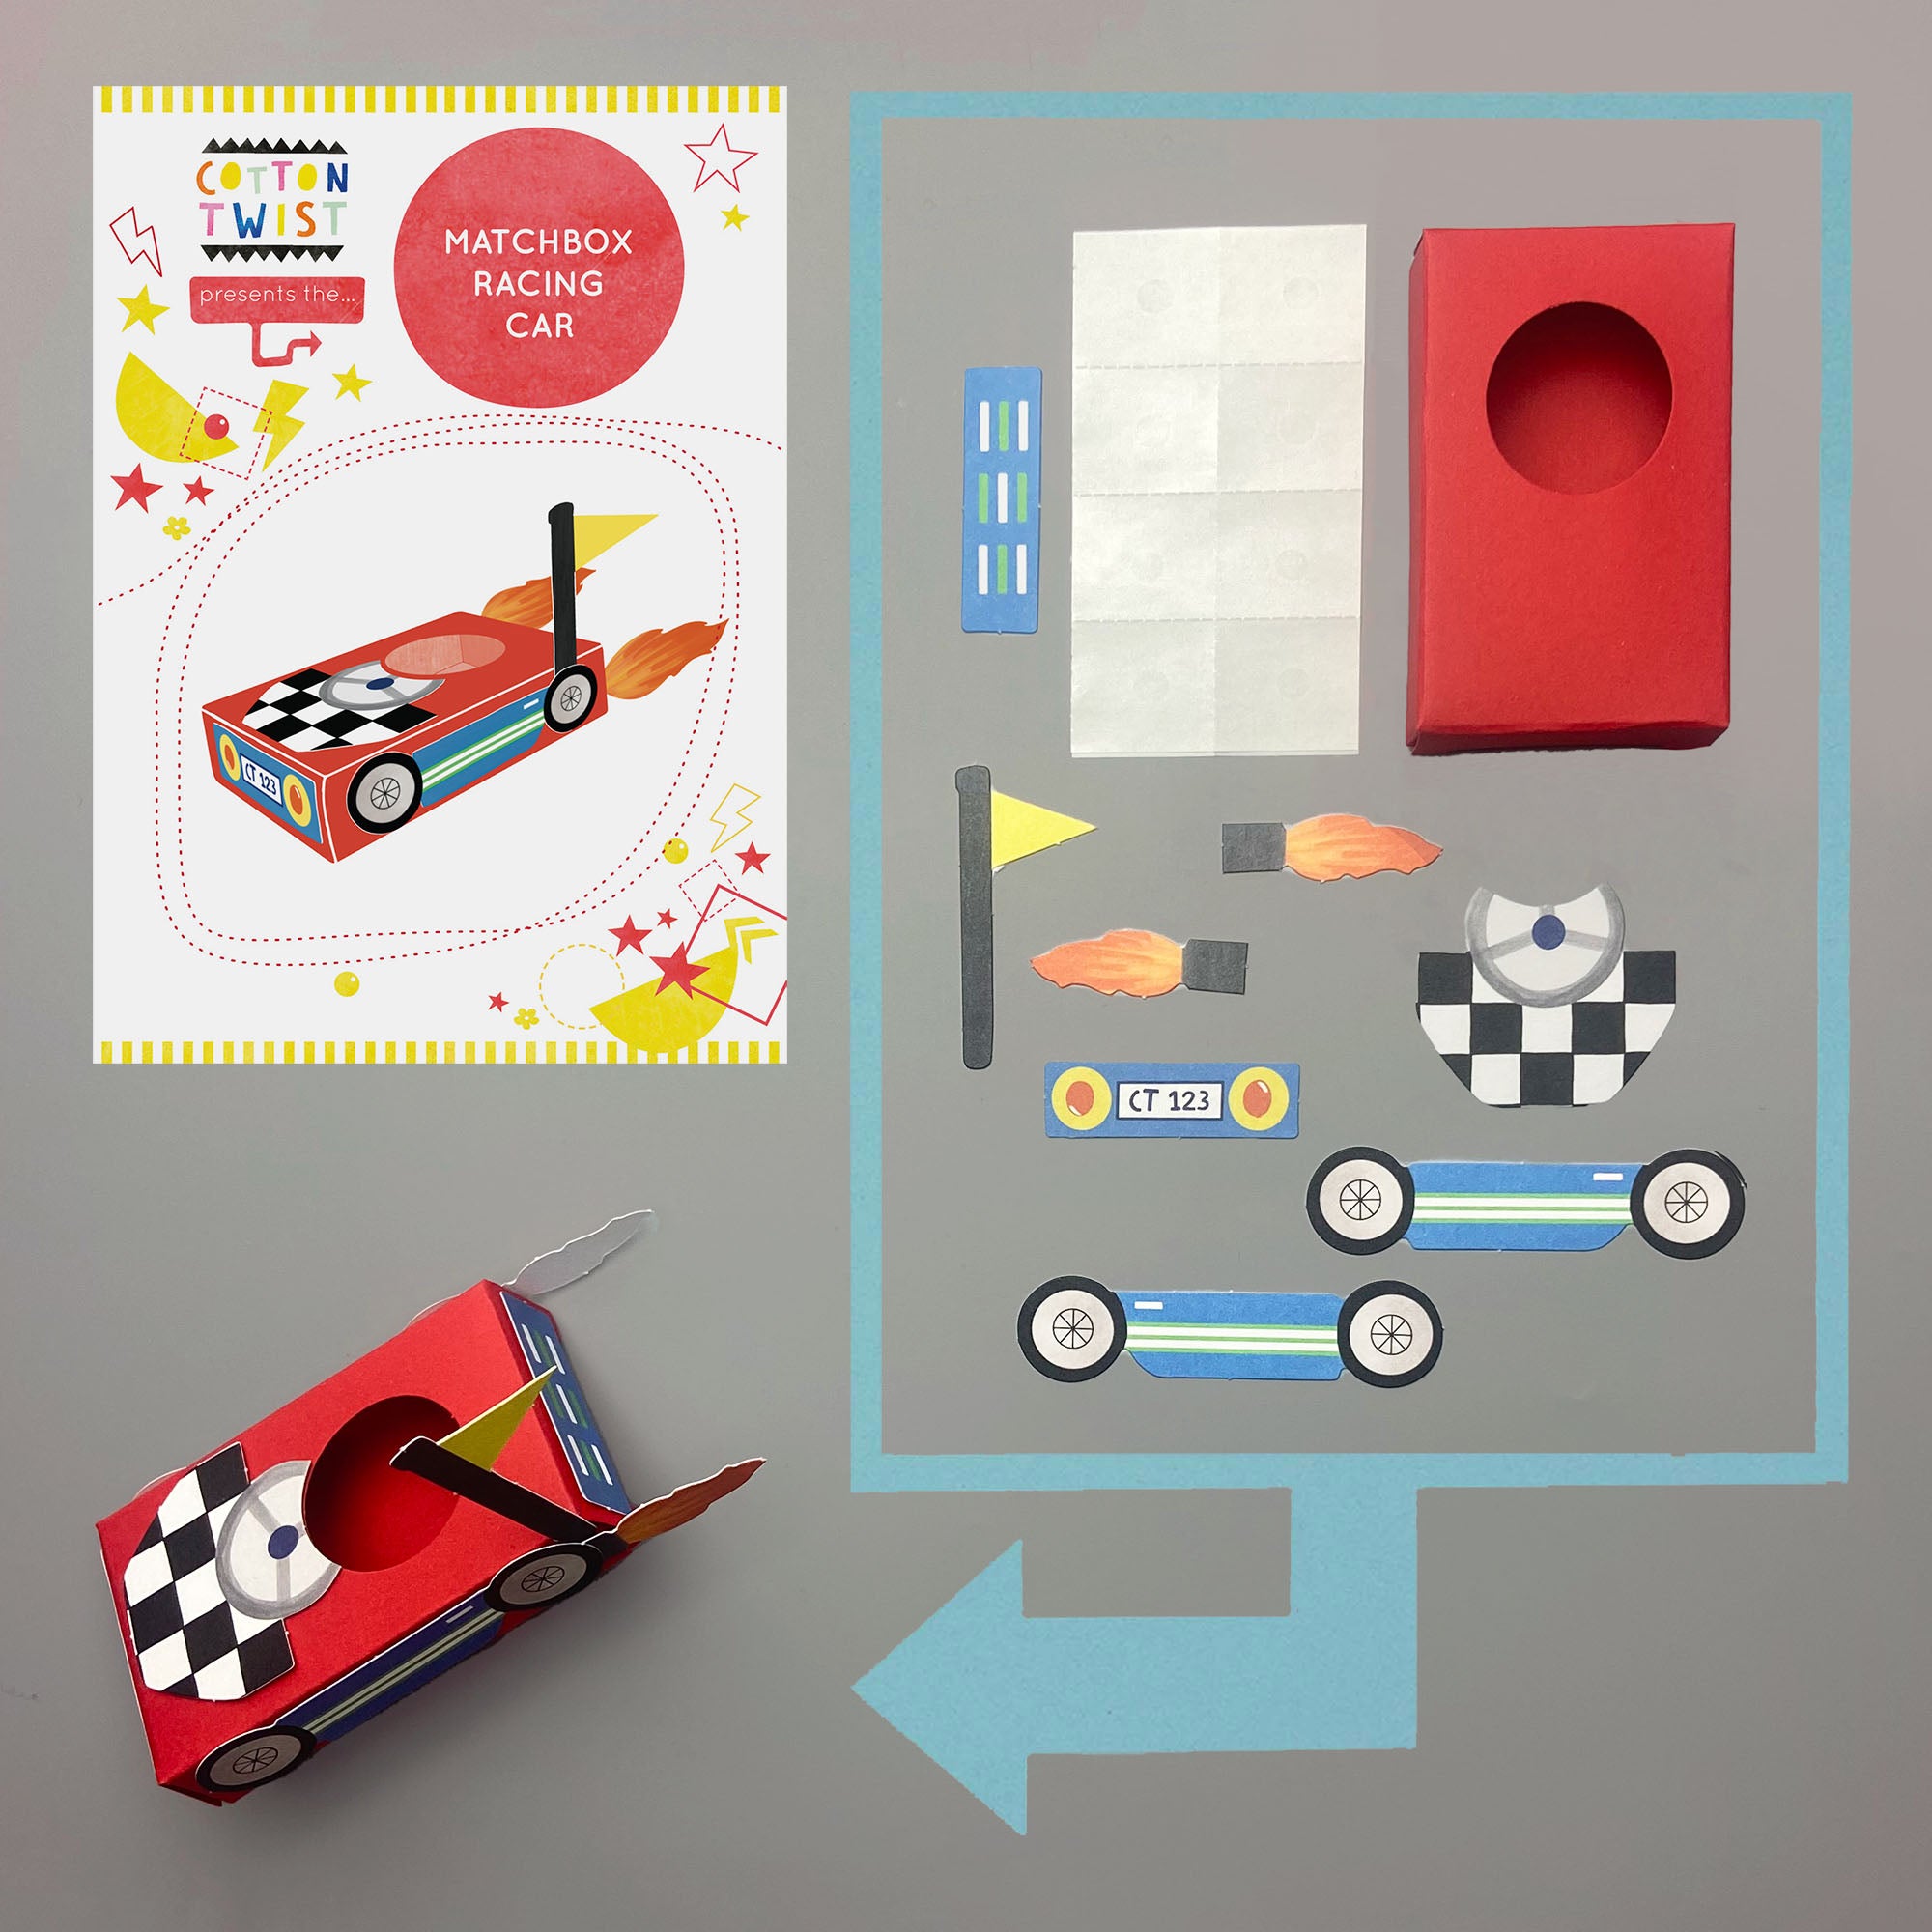 Joyful　Racing　Play　Car　–　Make　Own　Your　Matchbox